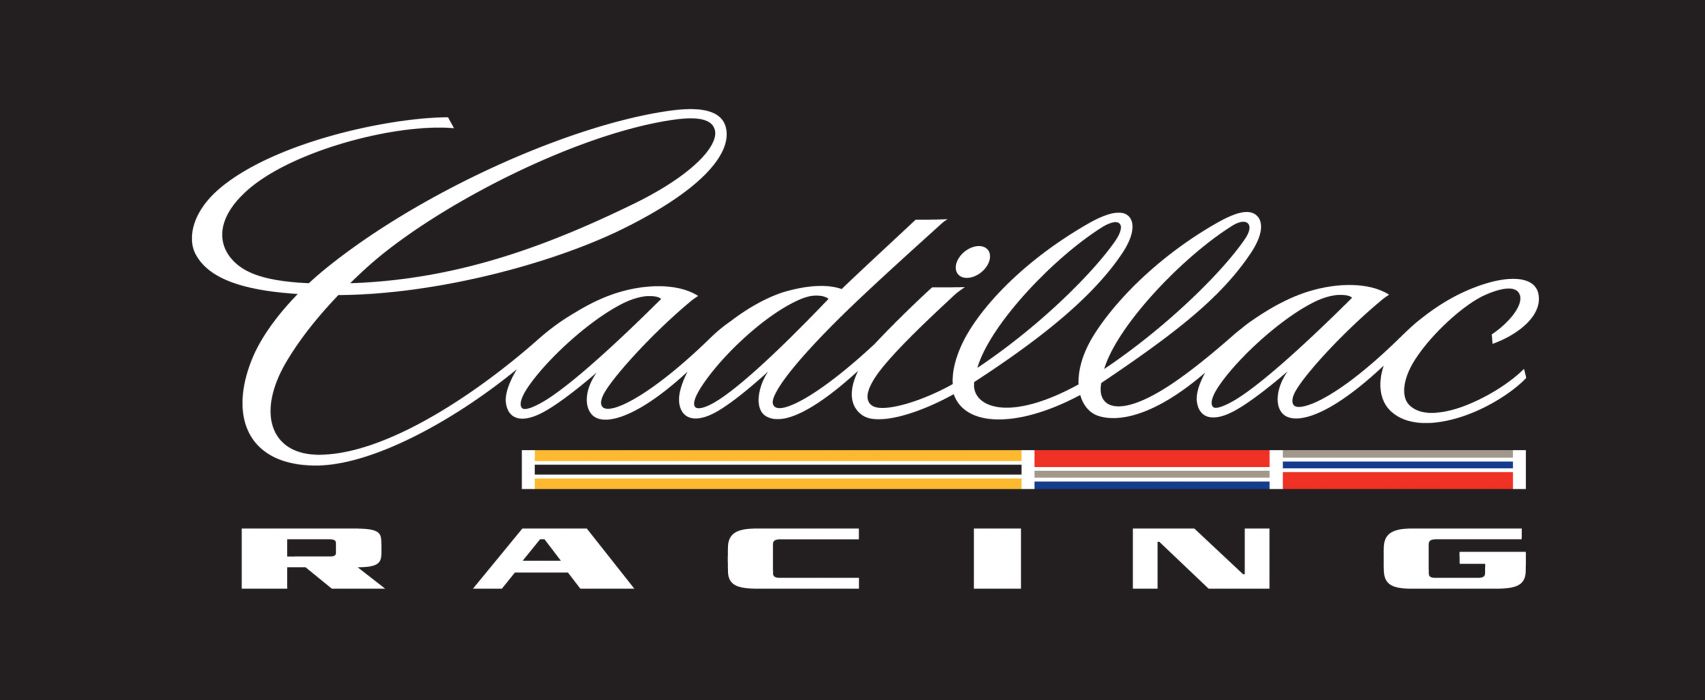 Cadillac Racing Logo - Racing logo race cadillac h wallpaper | 3000x1232 | 165507 | WallpaperUP